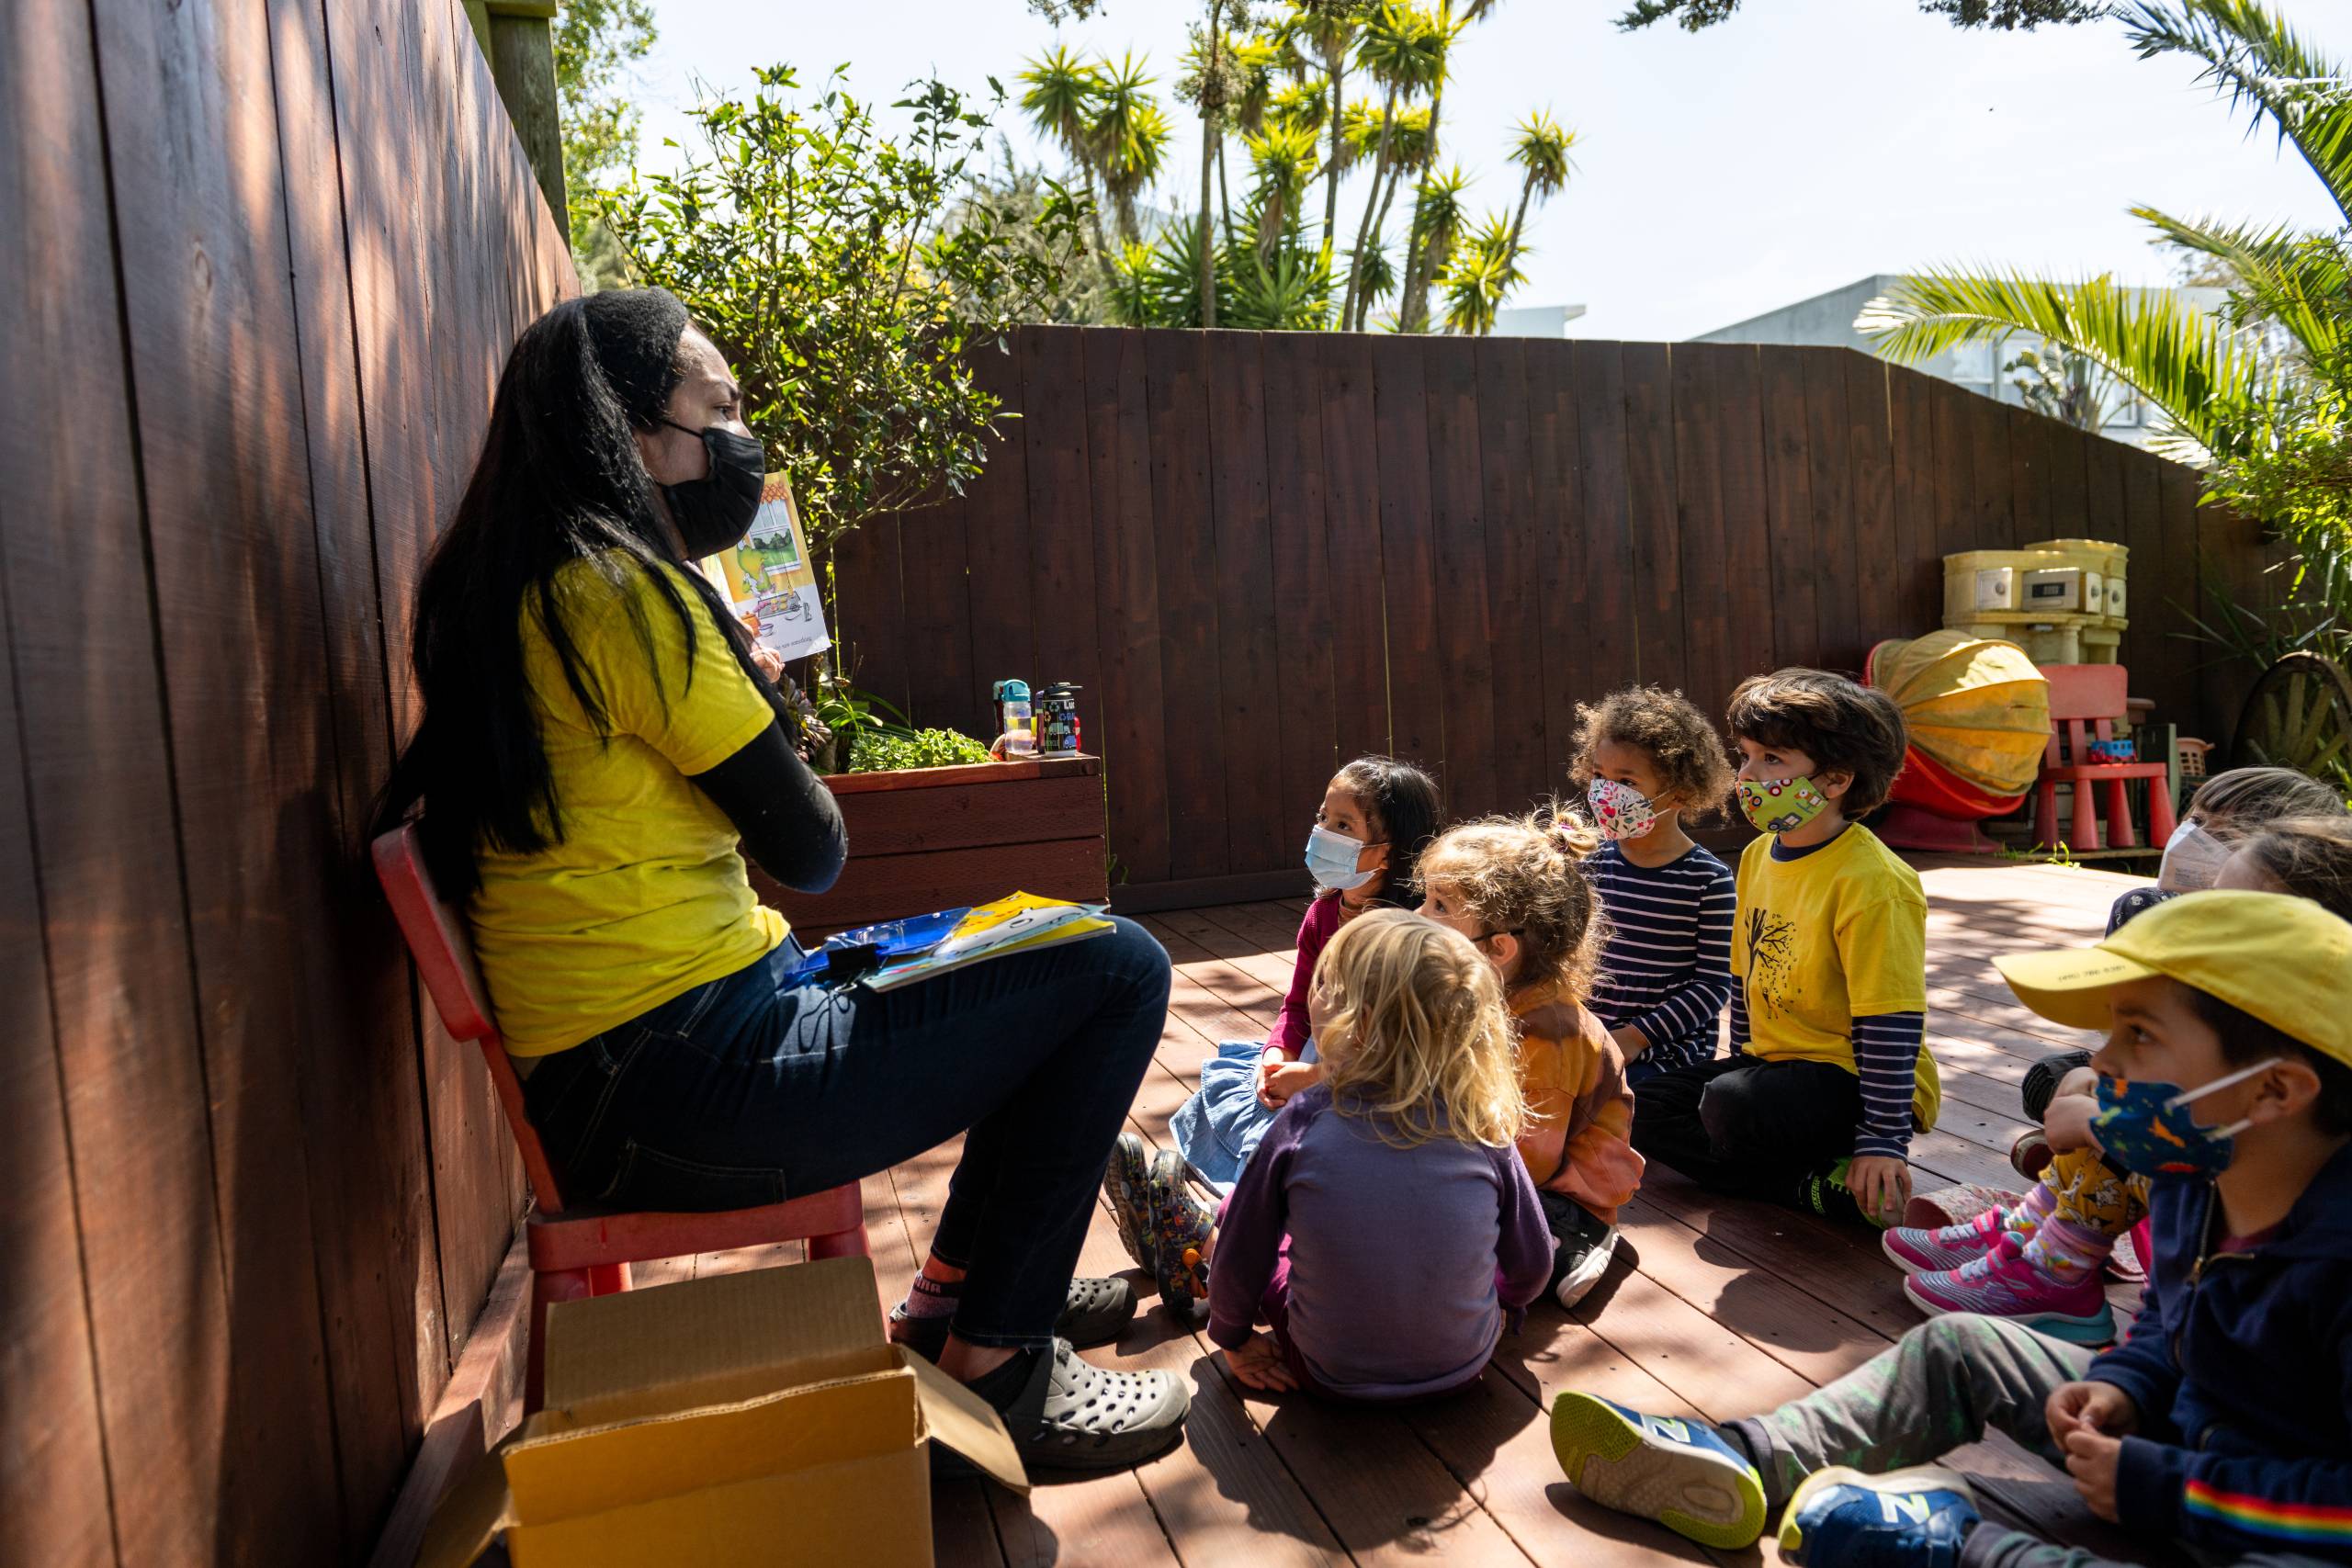 A teacher reads to children gathered around her.